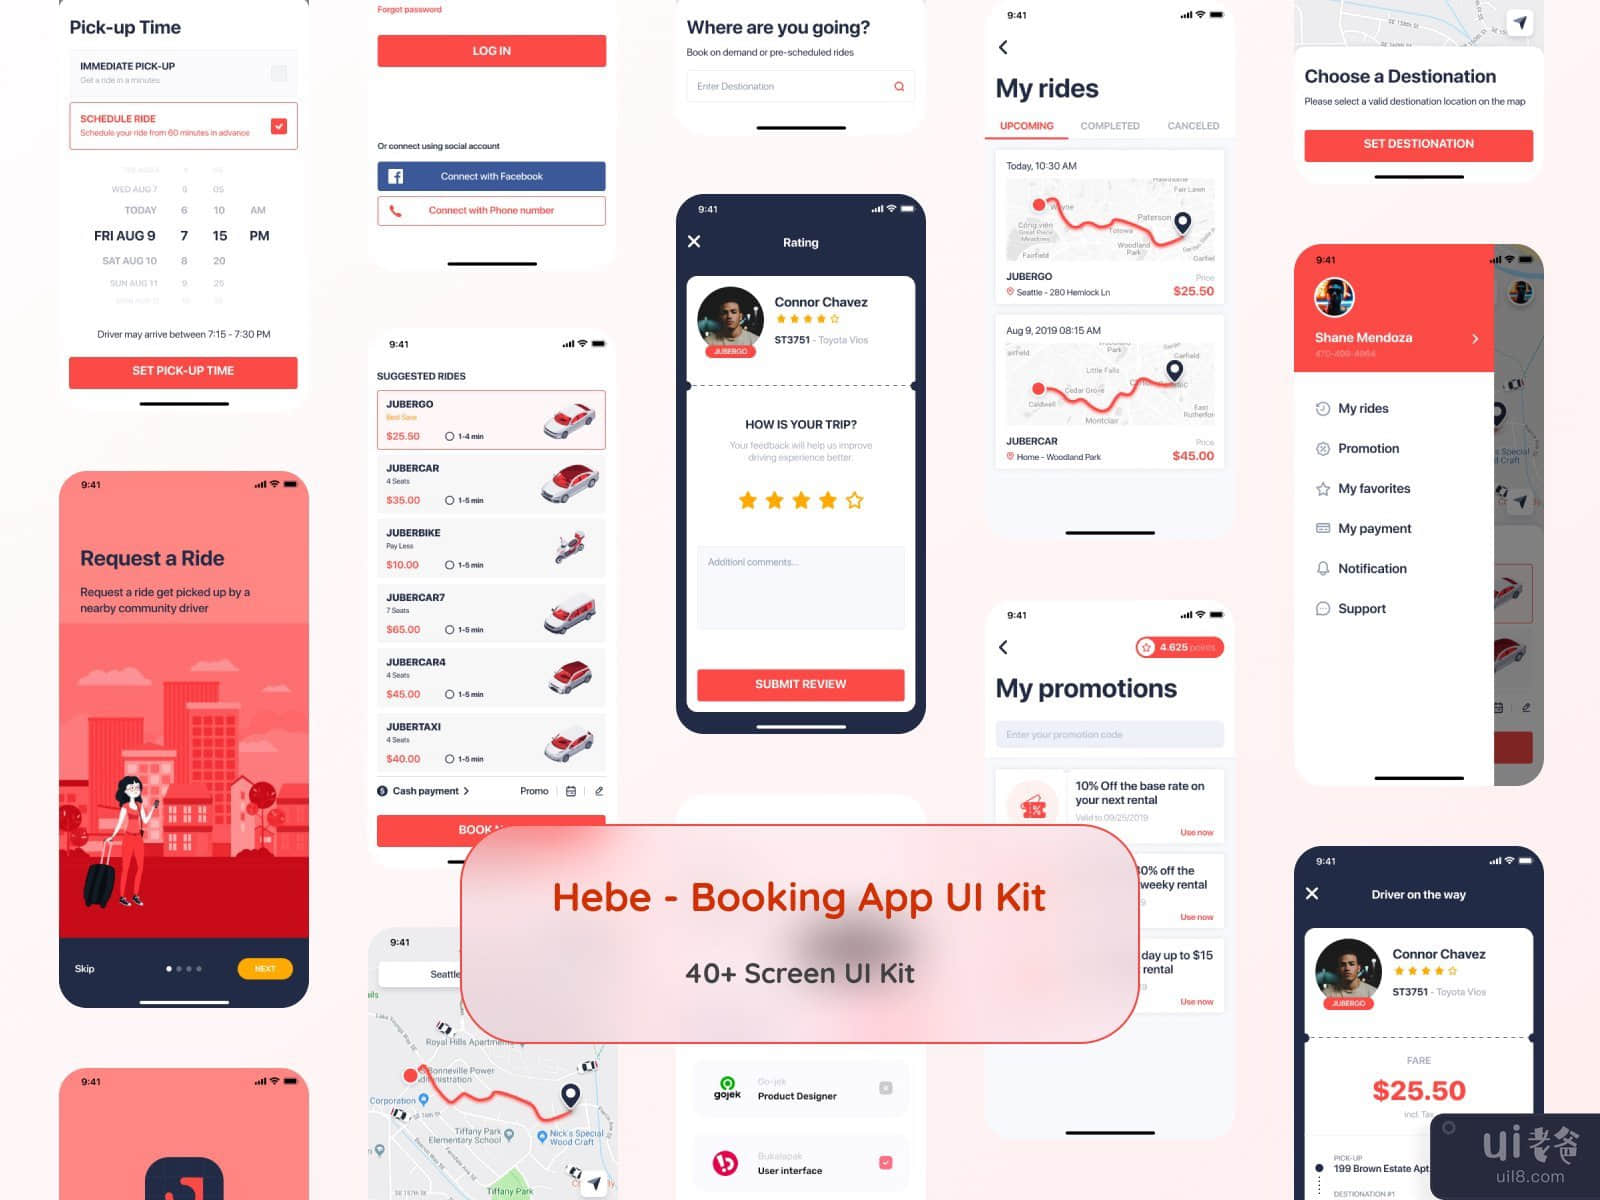 Hebe - Booking App UI Kit